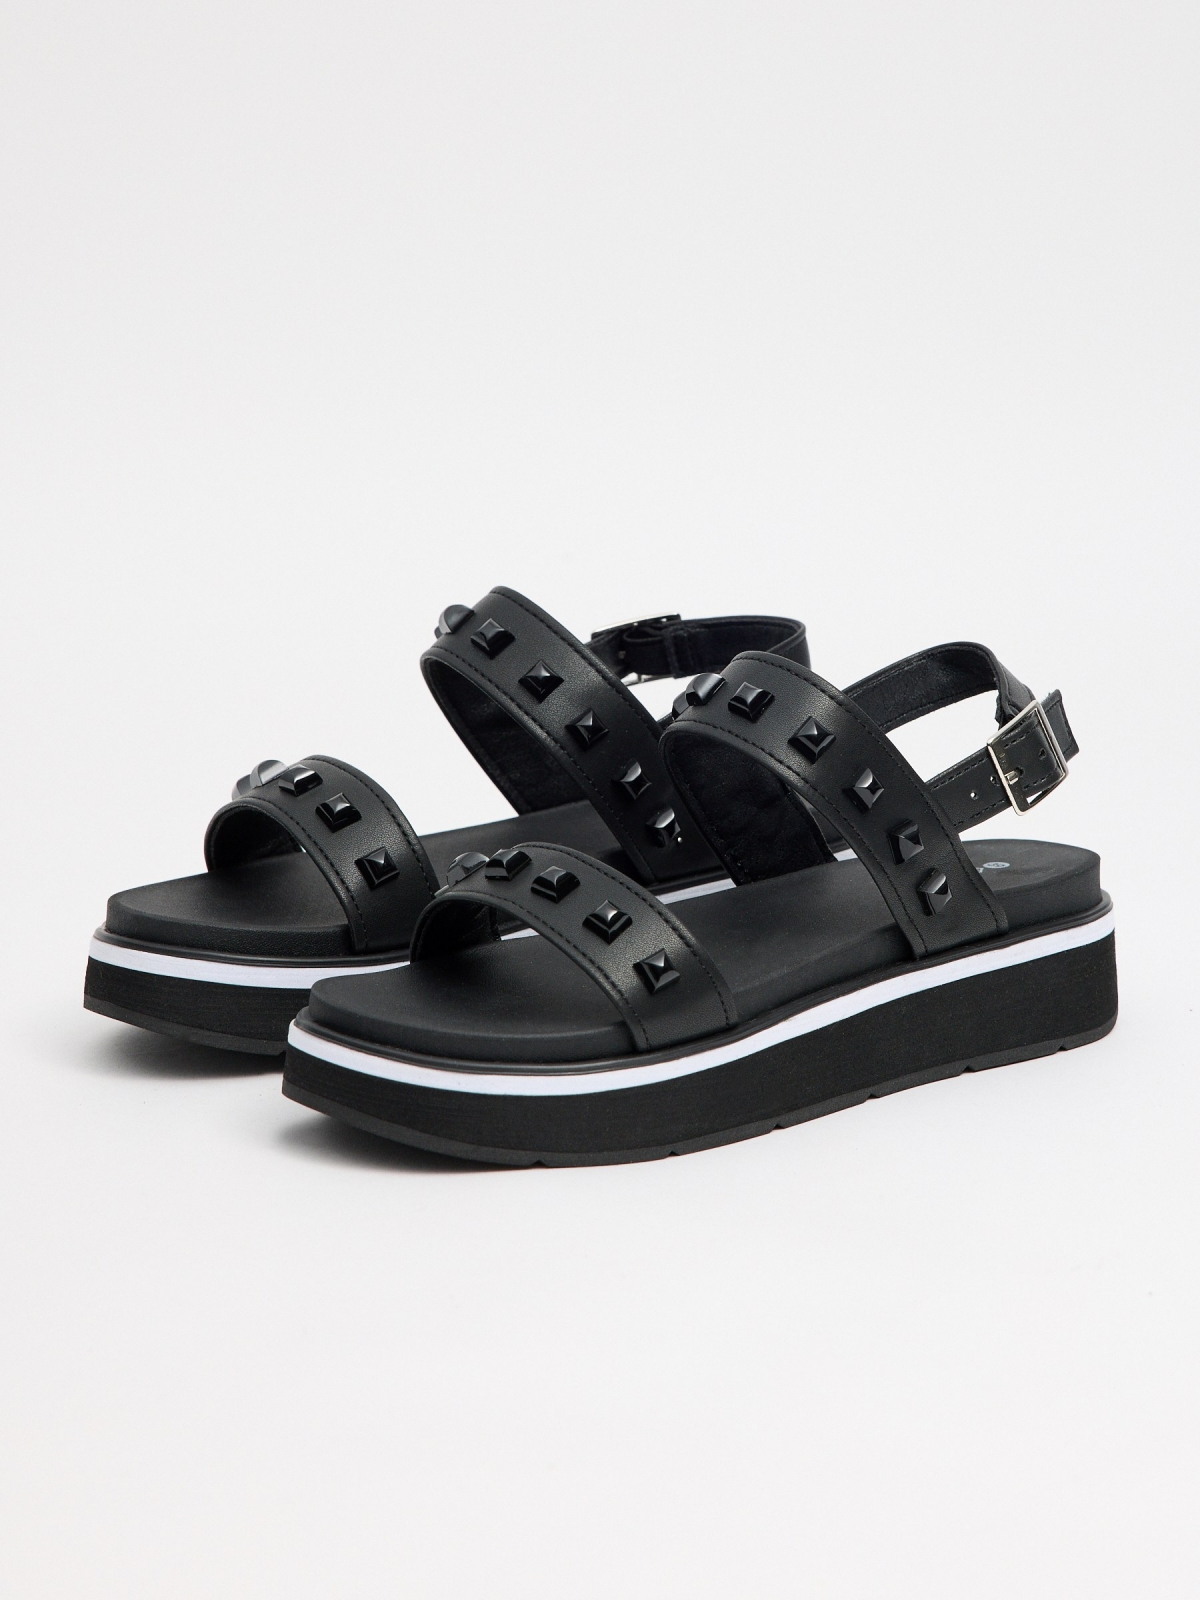 Sandália efeito couro com tachas preto vista frontal 45º